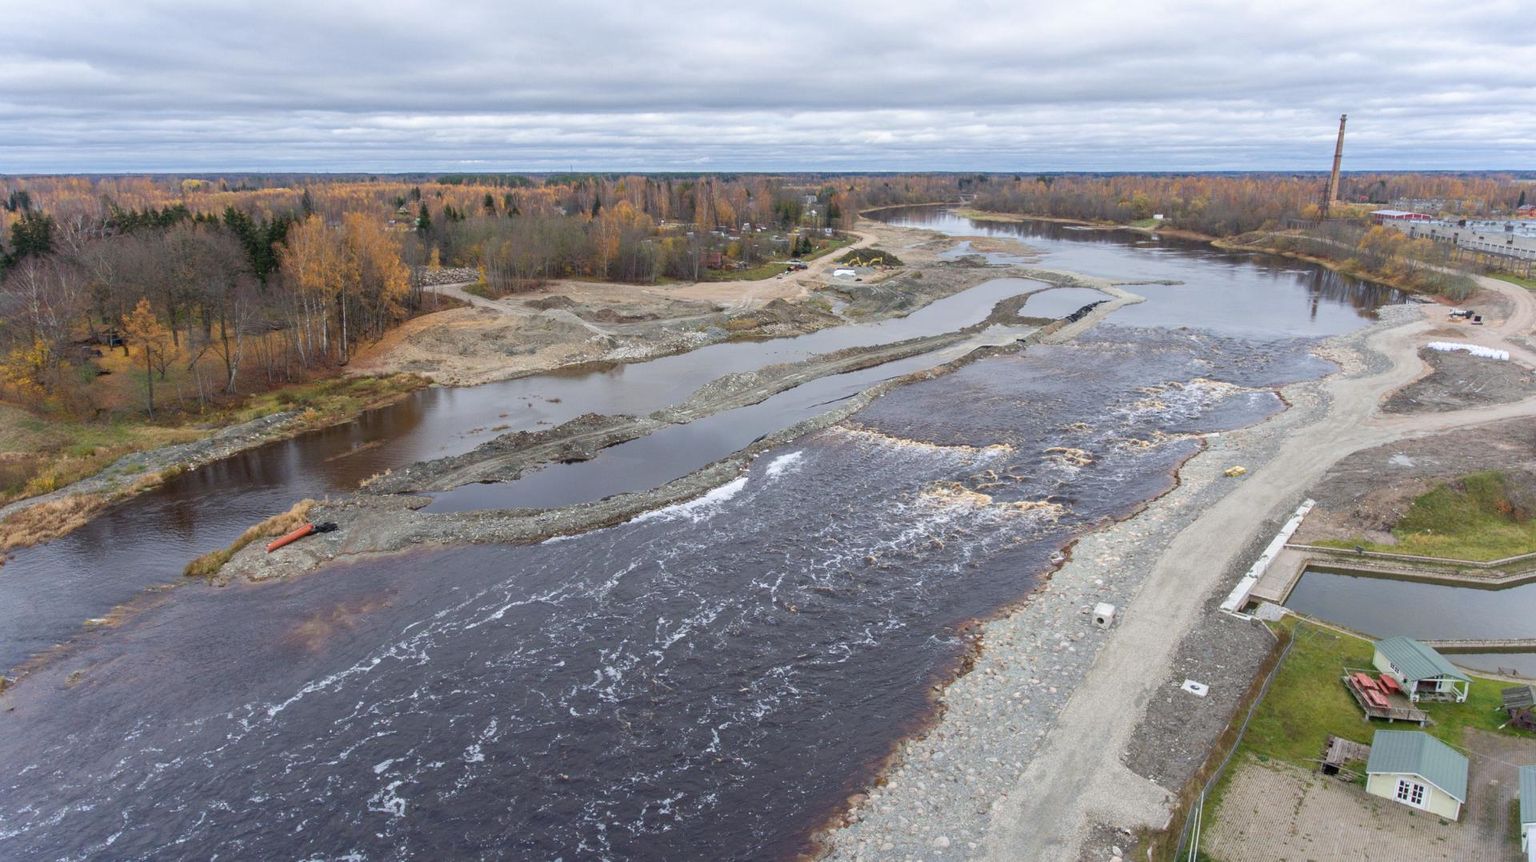 Tori vald soovib riigilt tasuta võõrandada Pärnu jõega piirnevad kinnistud, et rajada rahvusvahelistele standarditele vastav aastaringne veespordi- ja veeturismikeskus koos puhkealaga.